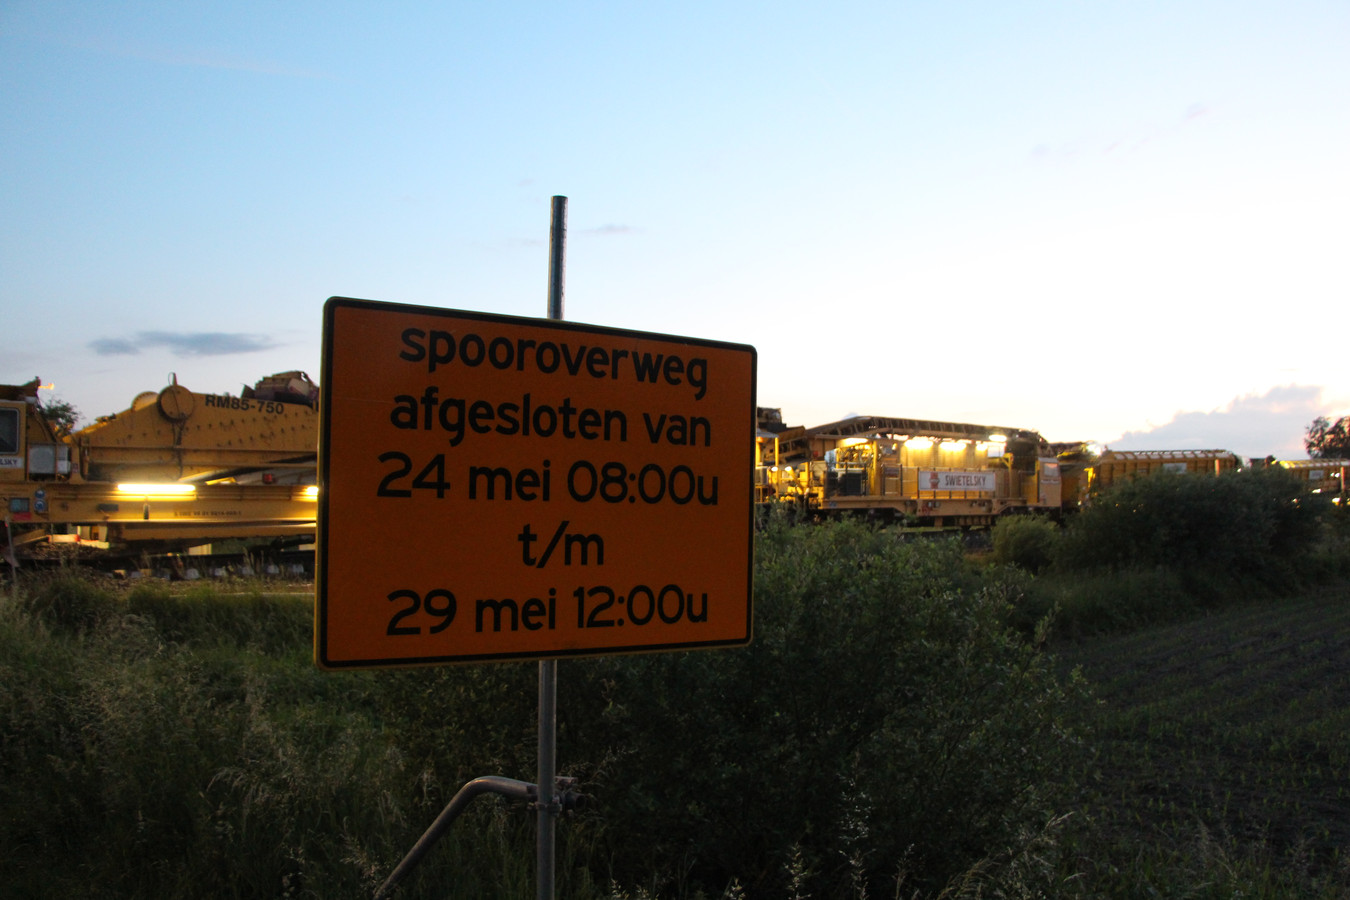 De spoorwegovergang in de Scheiddijk is van 24 tot 29 mei gestremd, aldus de borden.